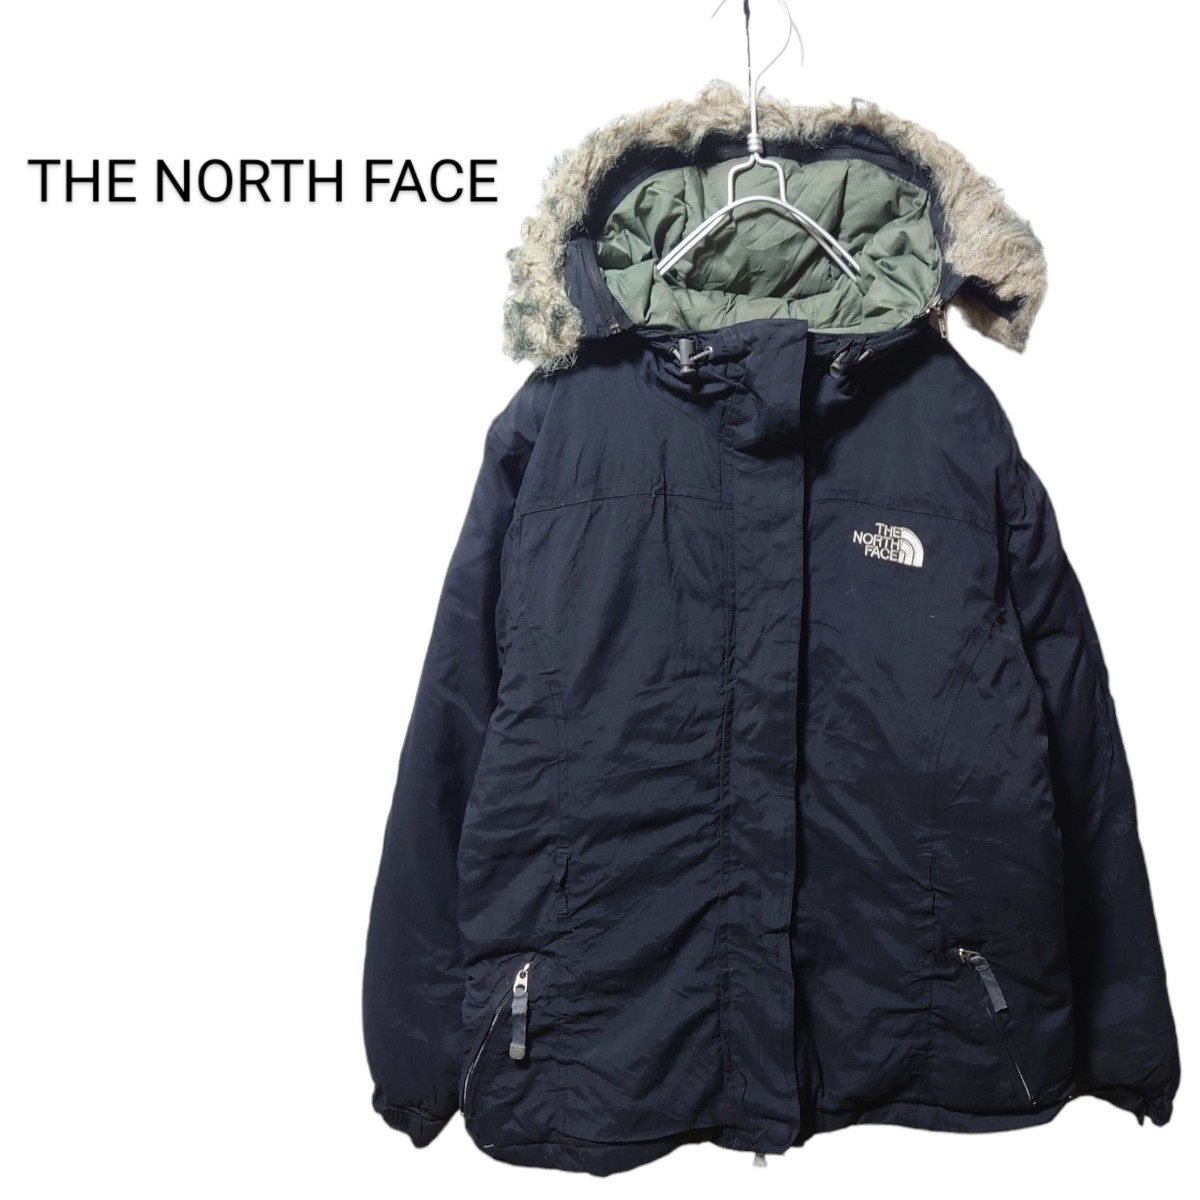 【THE NORTH FACE】ファーフード グースダウンジャケット A1726